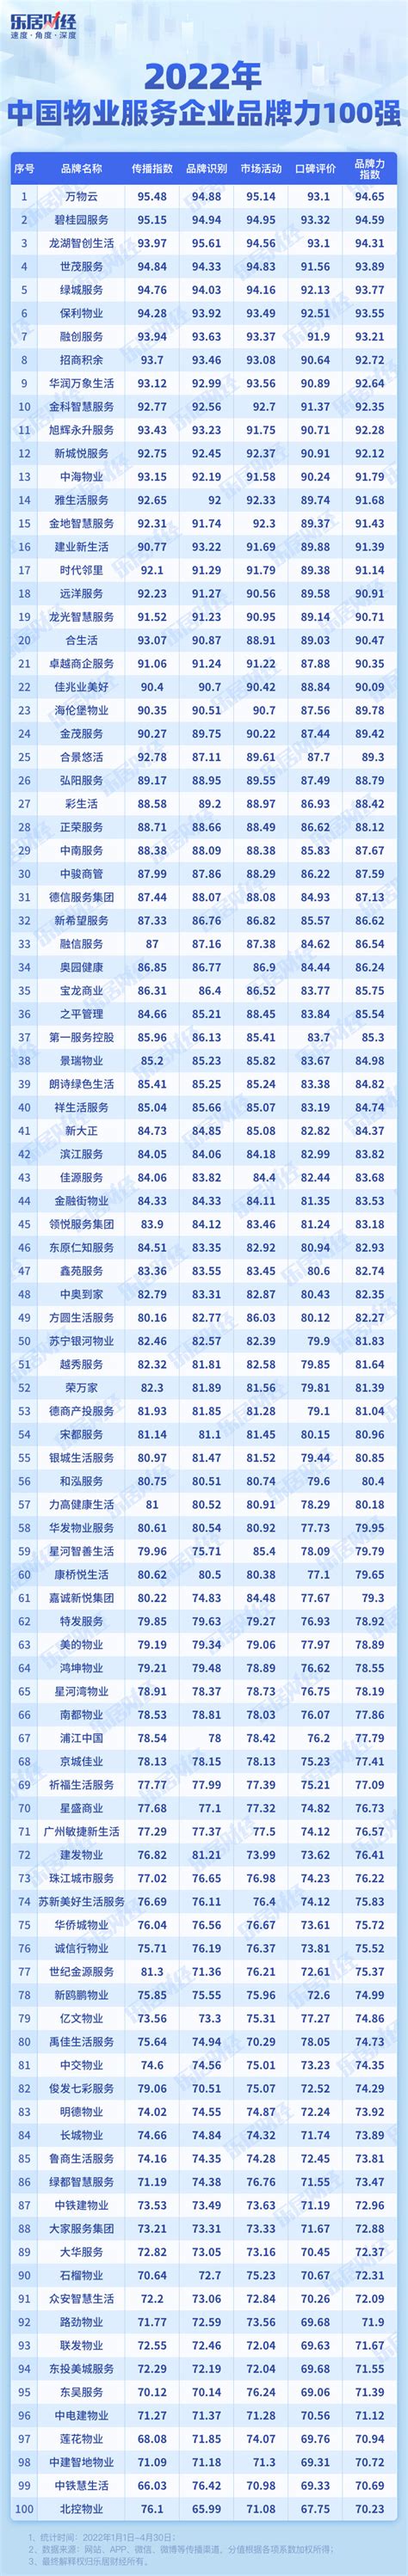 中国物业排名(国内物业排行榜)(附2022年最新排名前十名单)_全球排行榜123网